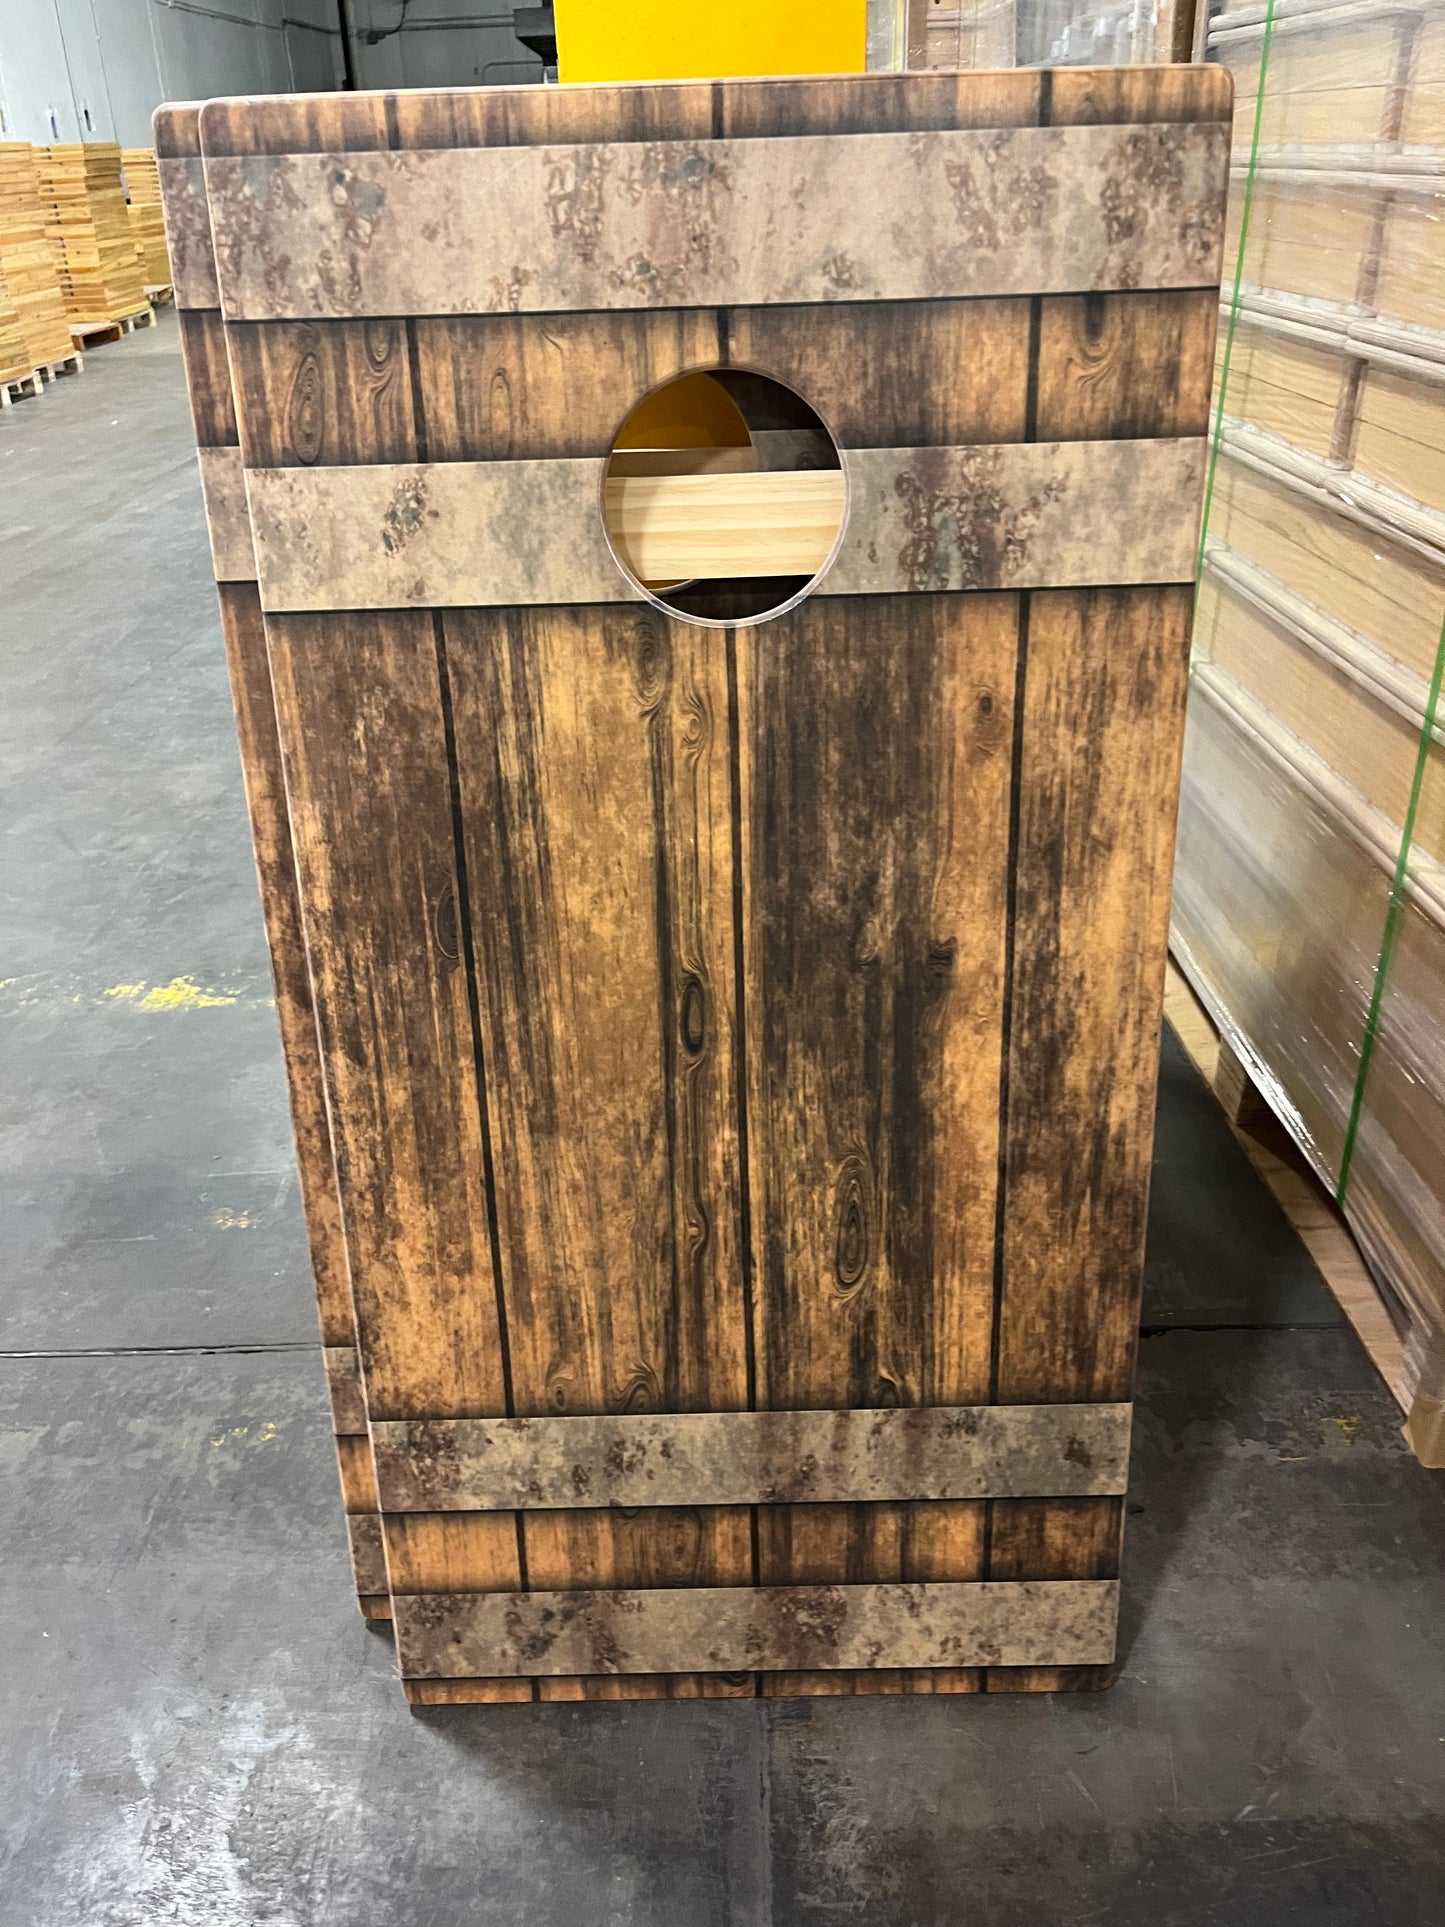 Personalized Wooden Barrel Cornhole Boards Set